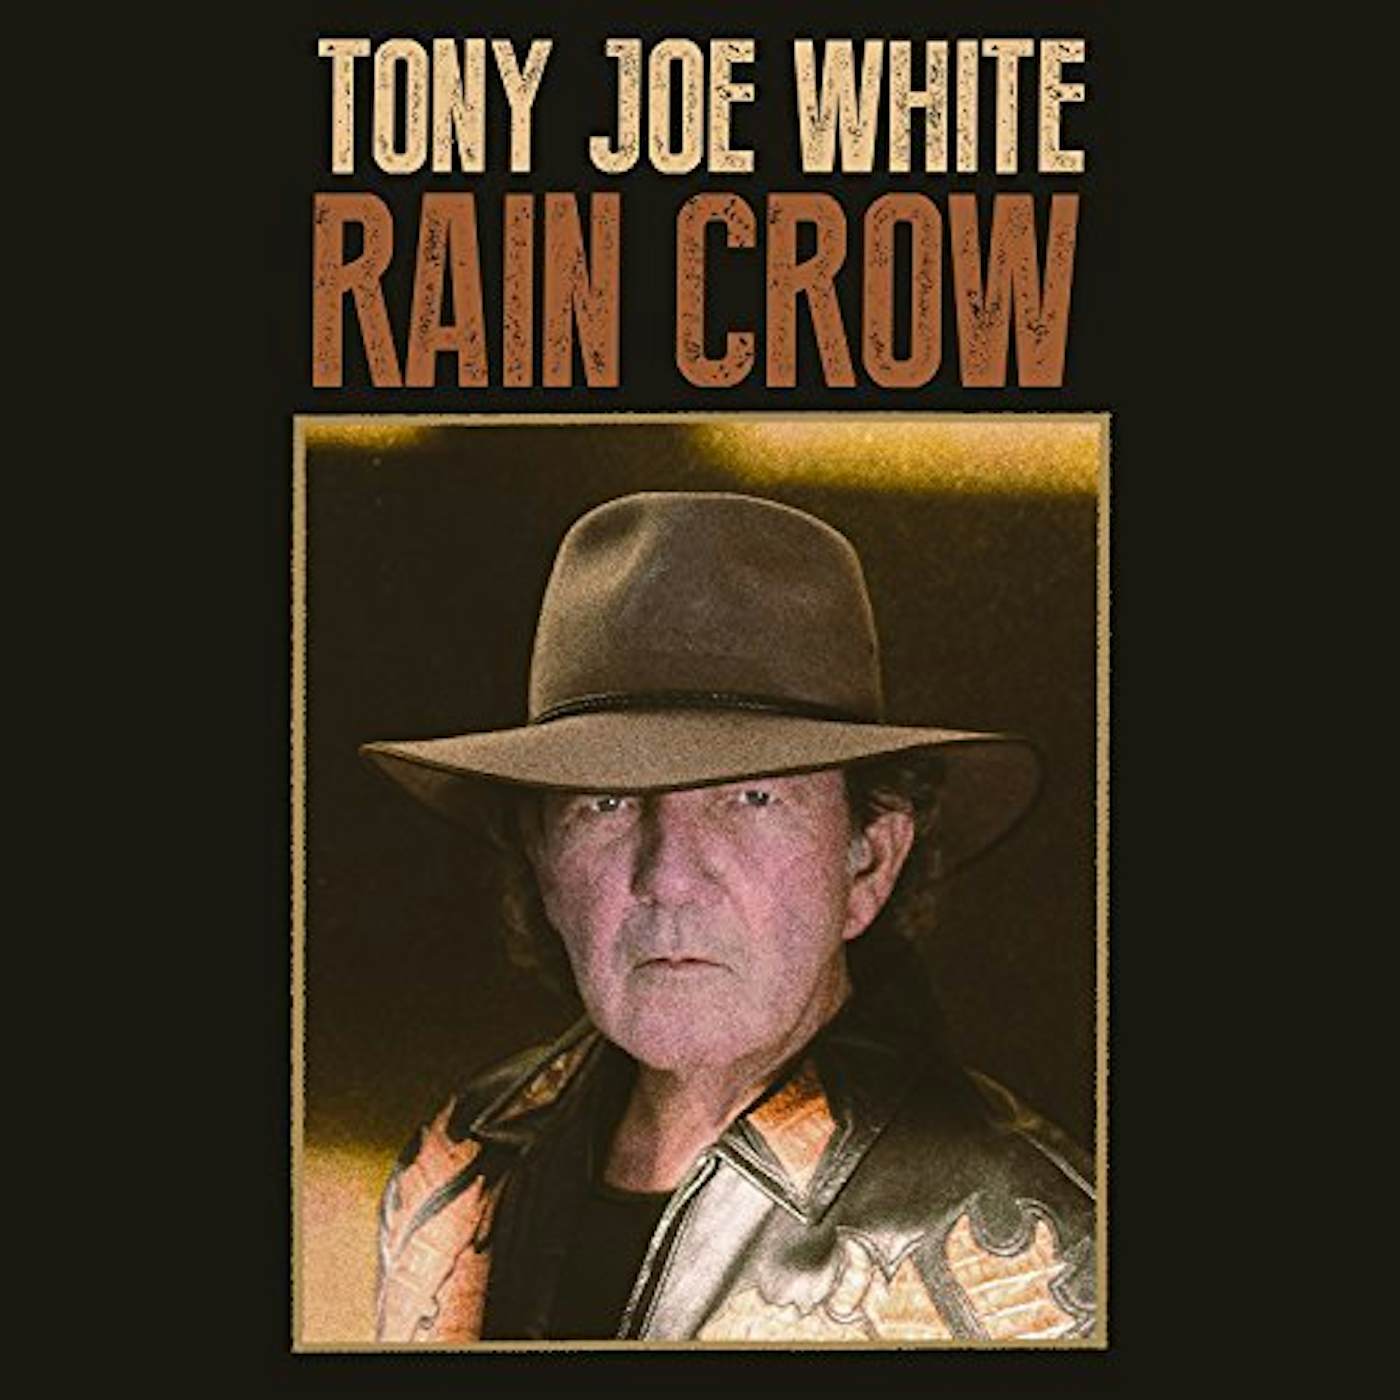 Tony Joe White Rain Crow Vinyl Record